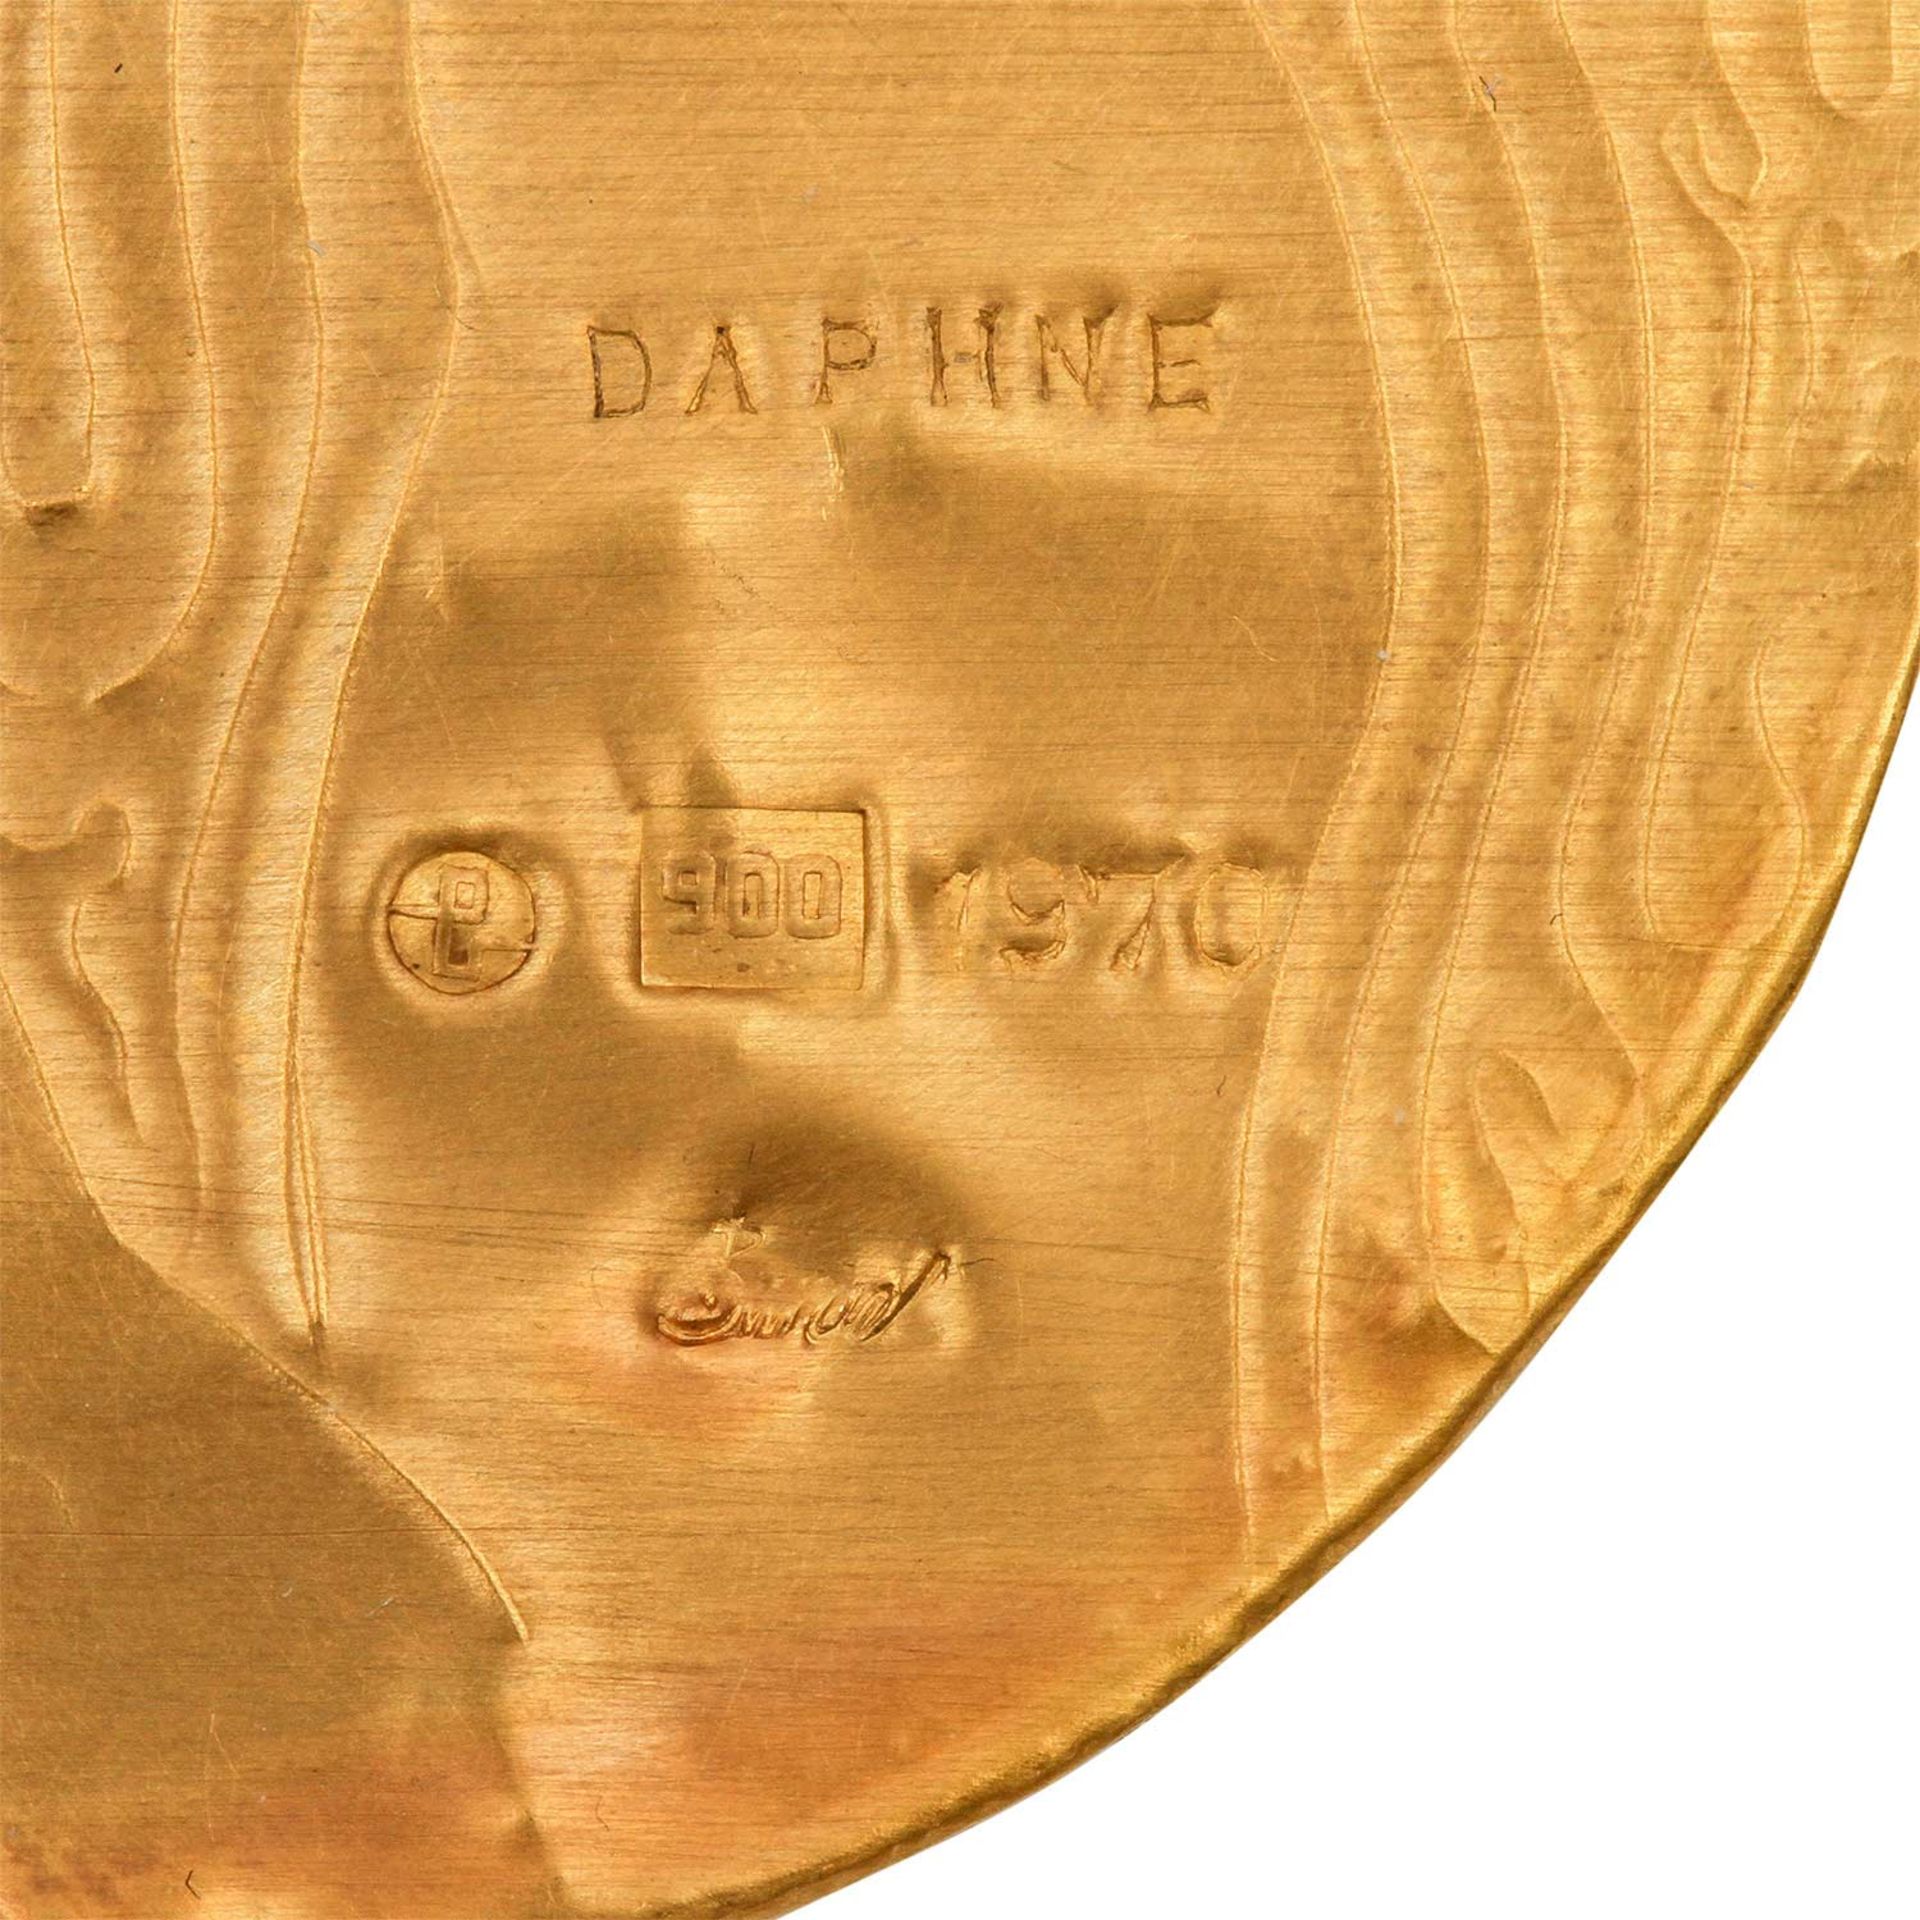 Goldminiatur "Daphne" (1970) von E. BURGEL,Gold 900, 1 Saphir, getrieben + ziseliert, auf Acryl, - Image 4 of 4